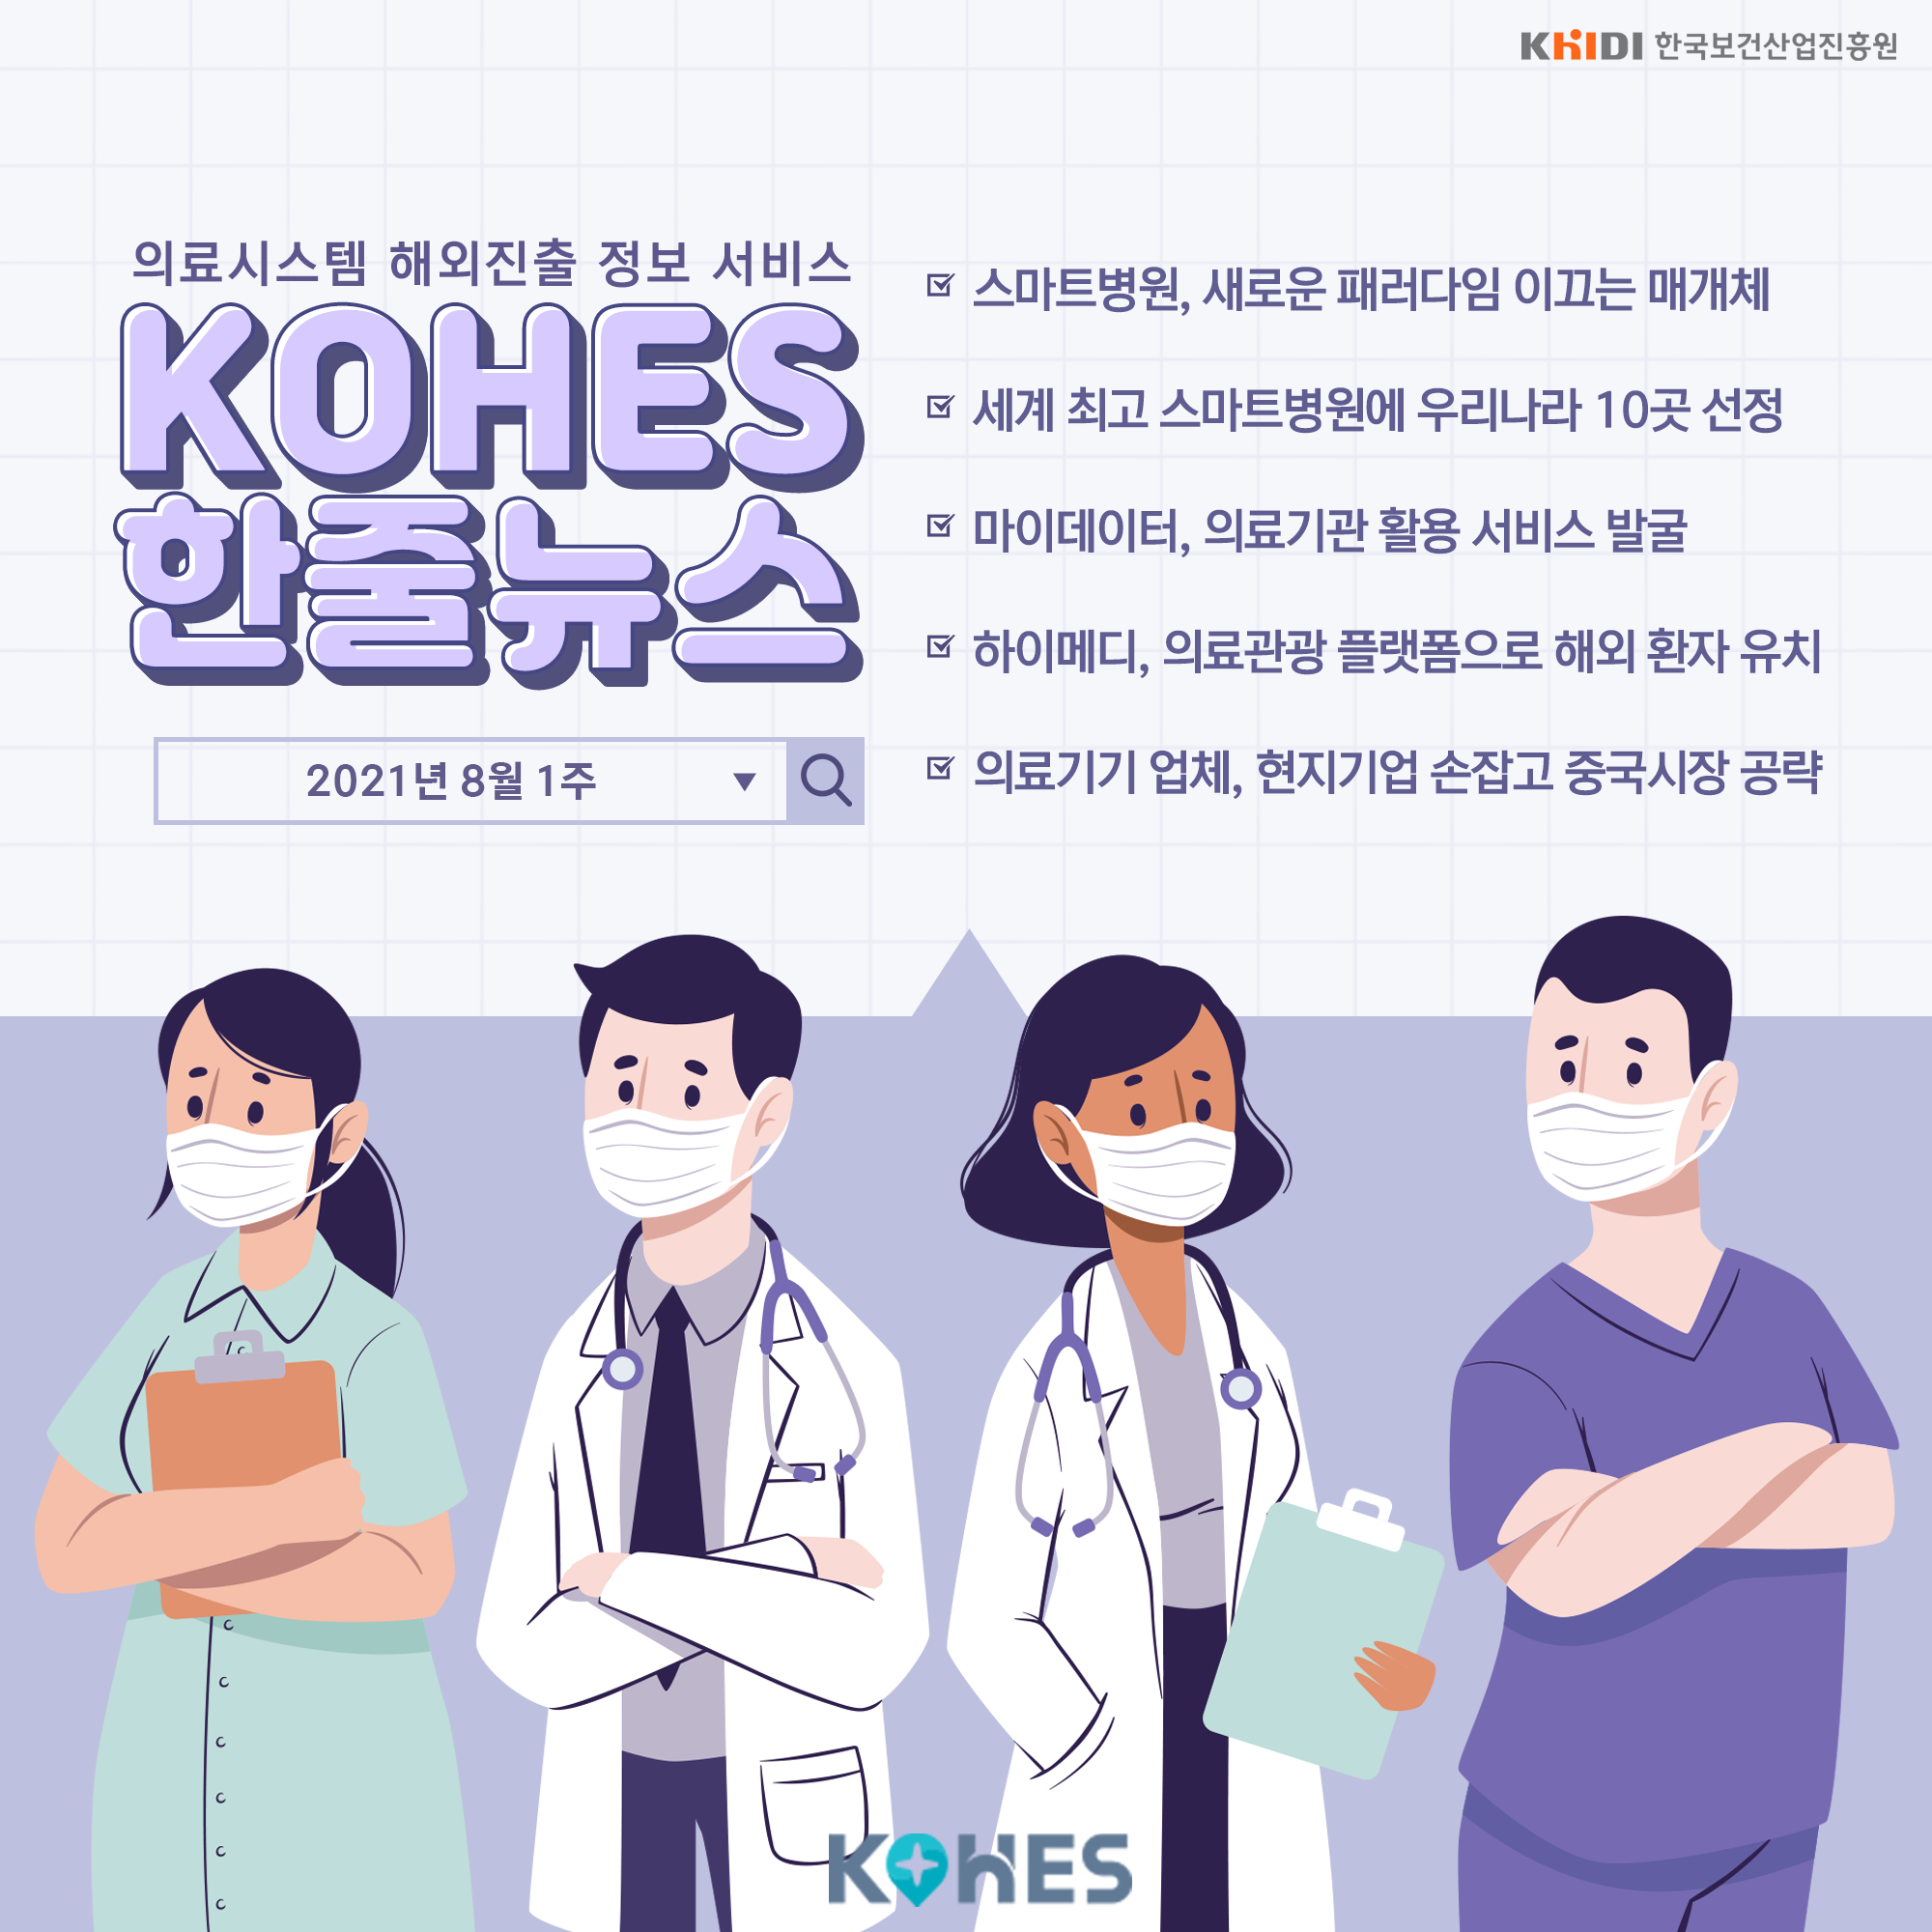 의료시스템 해외진출 정보 서비스(KOHES) 한줄뉴스(스마트 병원 등)